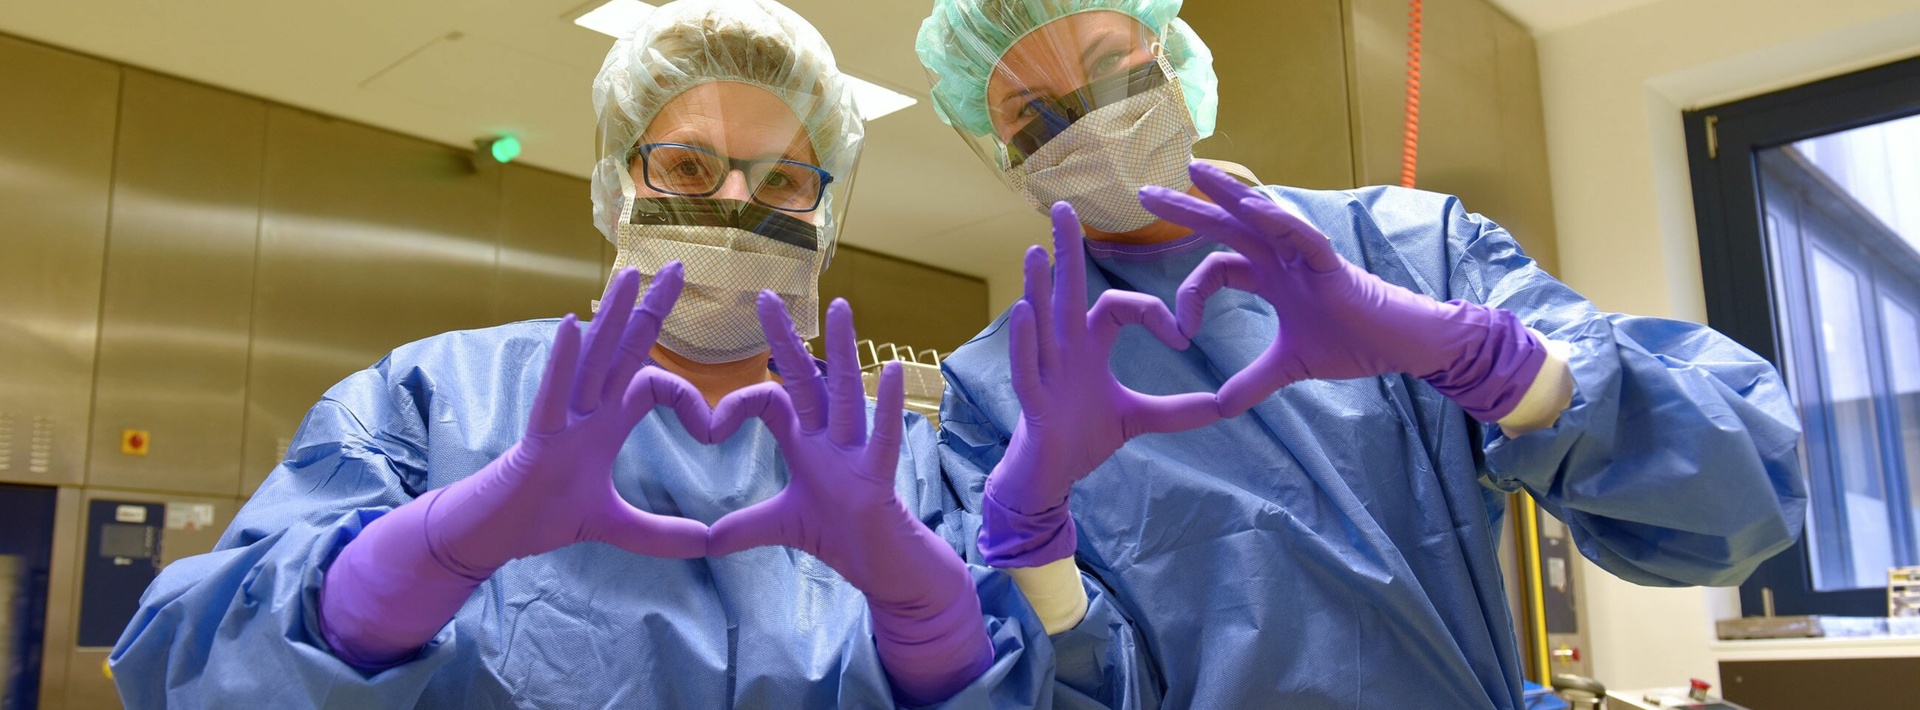 Medizinische Angestellte in Schutz-Aussrüstung bilden ein Herz mit ihren Händen